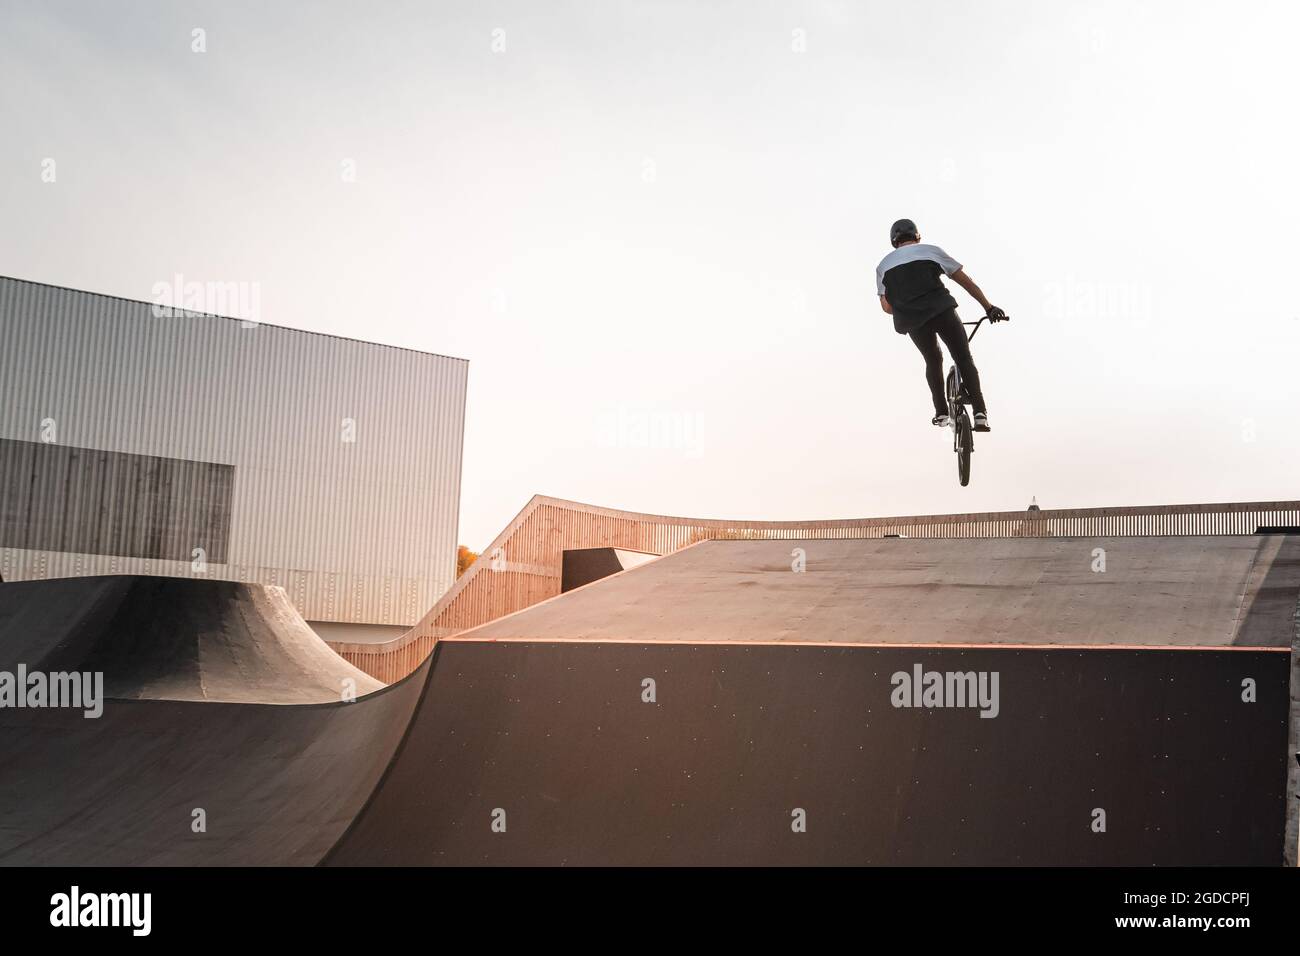 Un jeune pilote sur un vélo BMX fait des tours dans les airs. Nage libre BMX dans un parc de skate. Banque D'Images